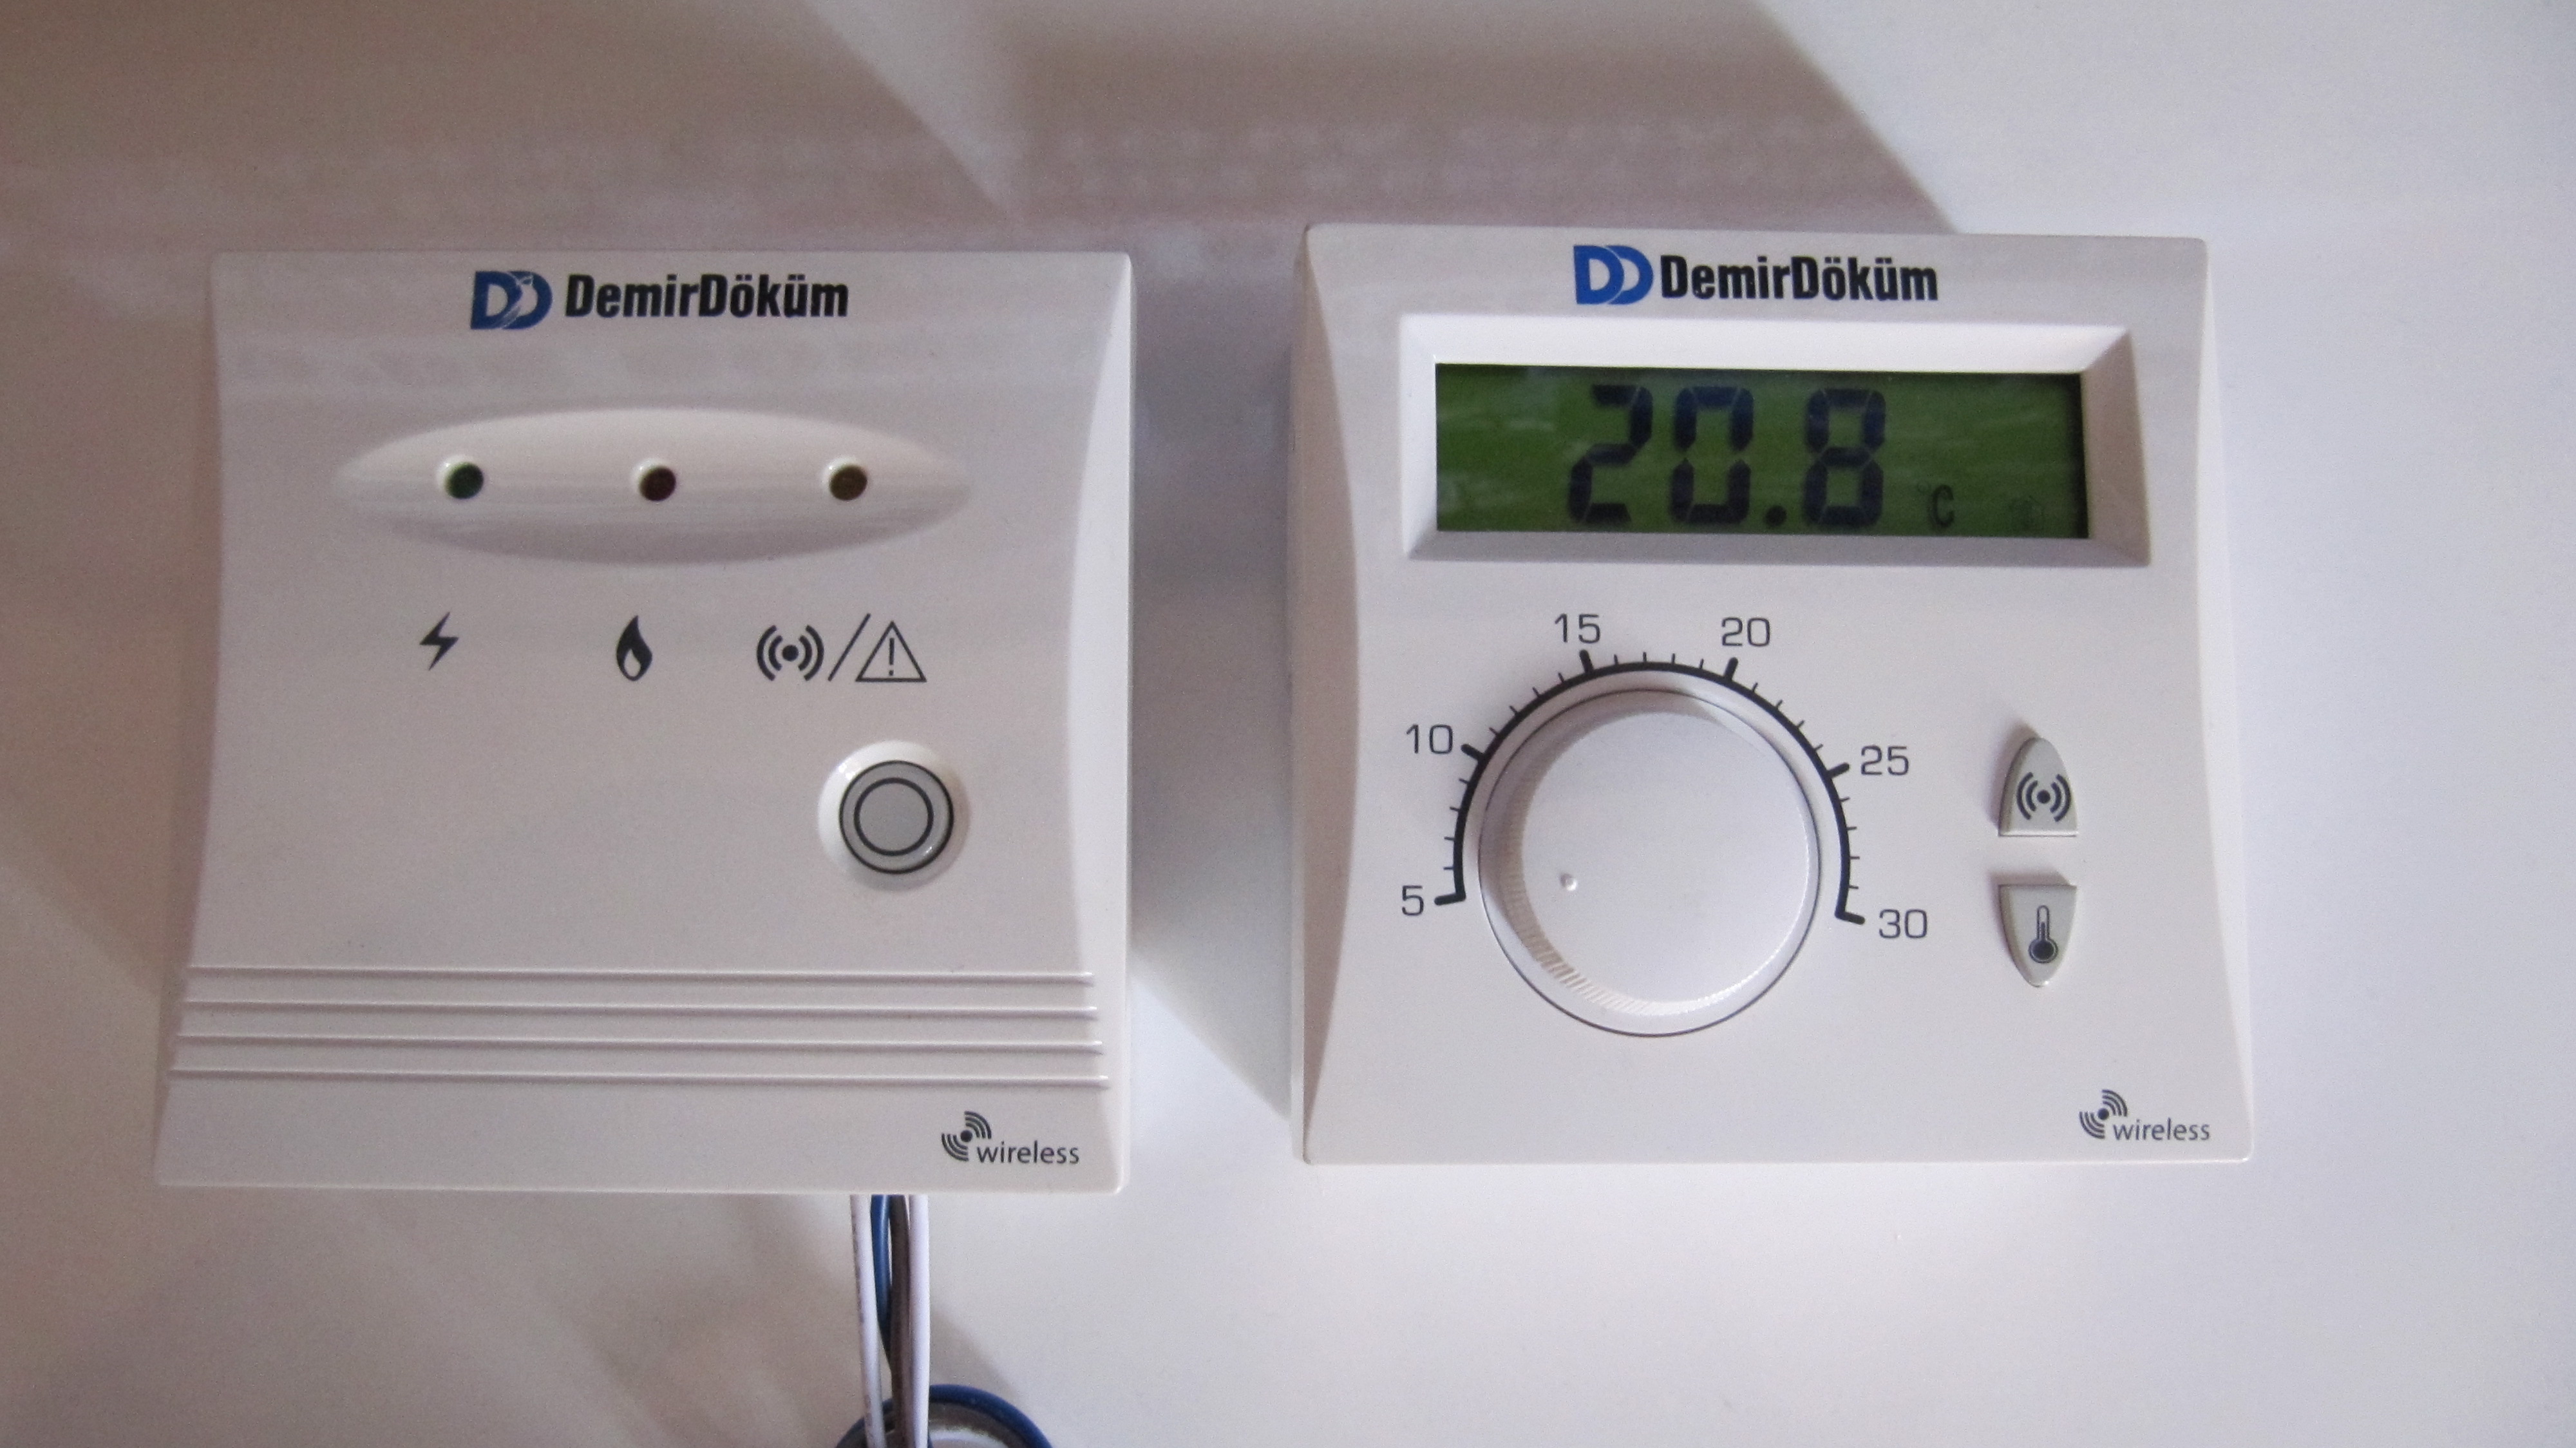  Demirdöküm RF6001 Oda termostatı.